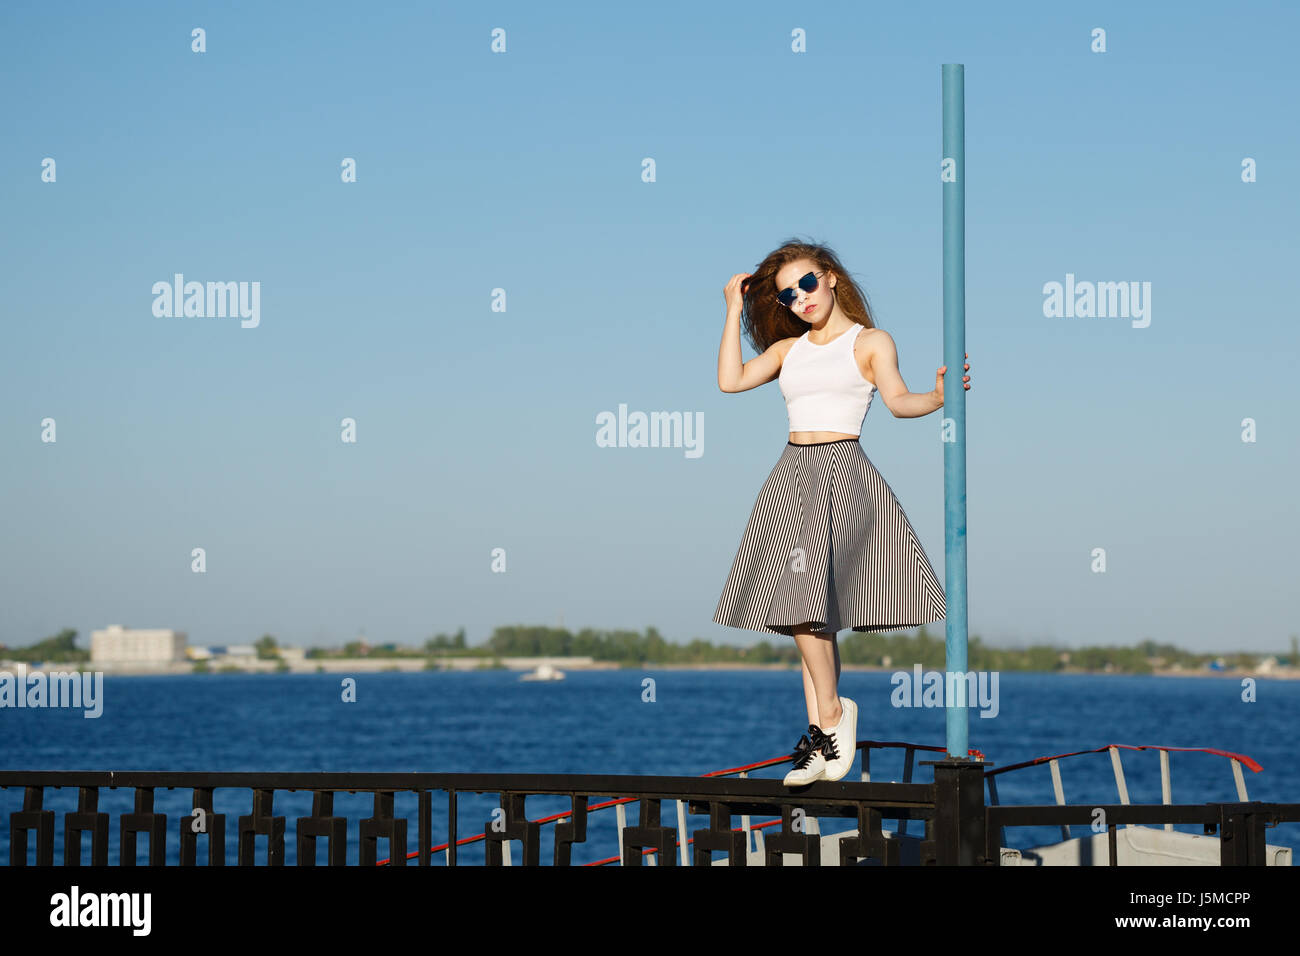 Junge attraktive Mädchen Hipster tanzen auf der Pole. Sie ist ein Top, einen Rock und eine Sonnenbrille tragen. Das Konzept des Lebens in Bewegung. Stockfoto